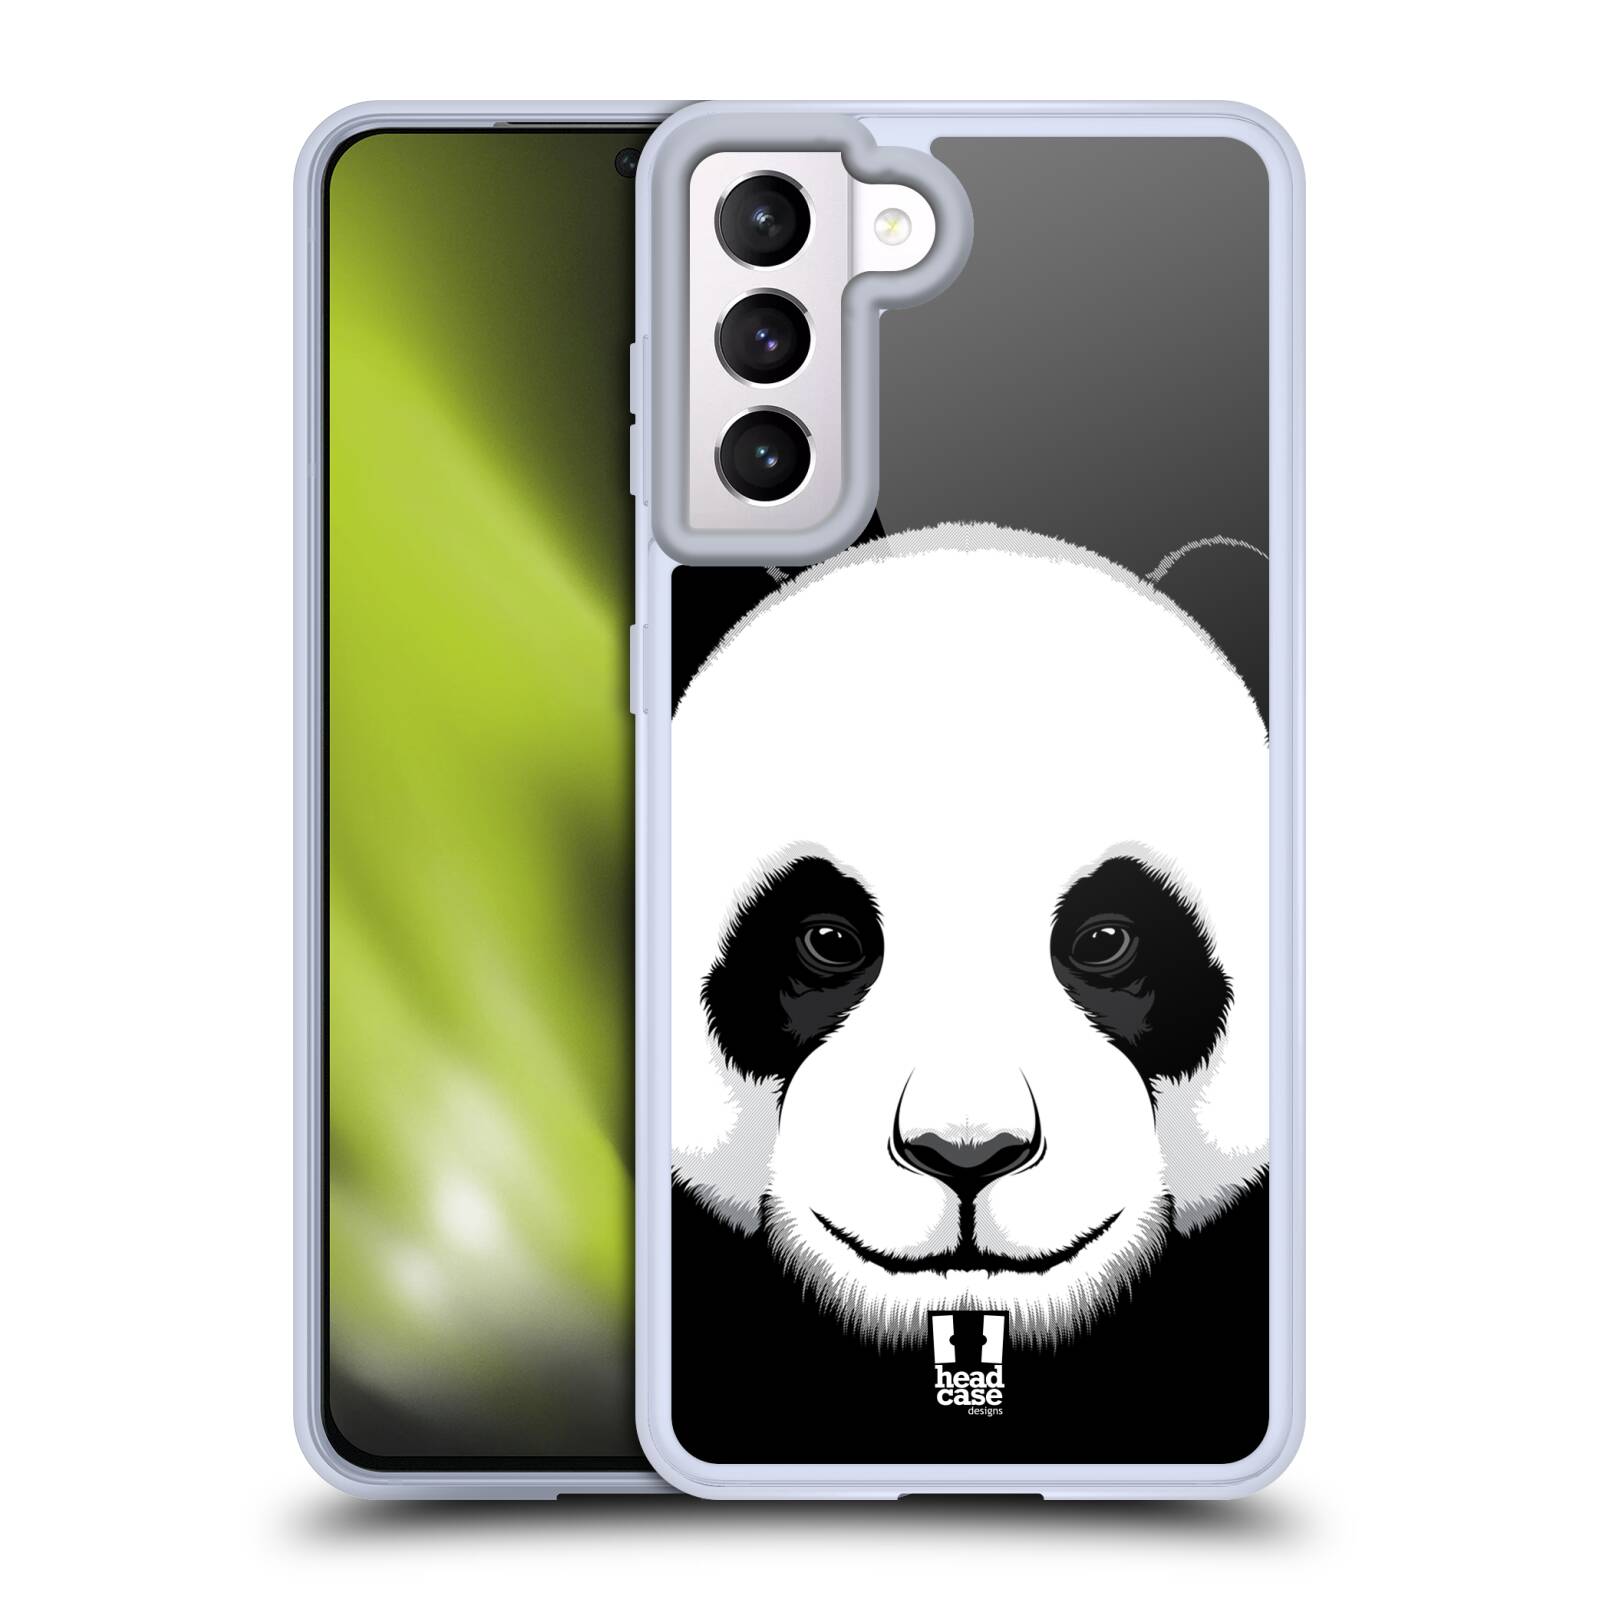 Plastový obal HEAD CASE na mobil Samsung Galaxy S21 5G vzor Zvíře kreslená tvář panda